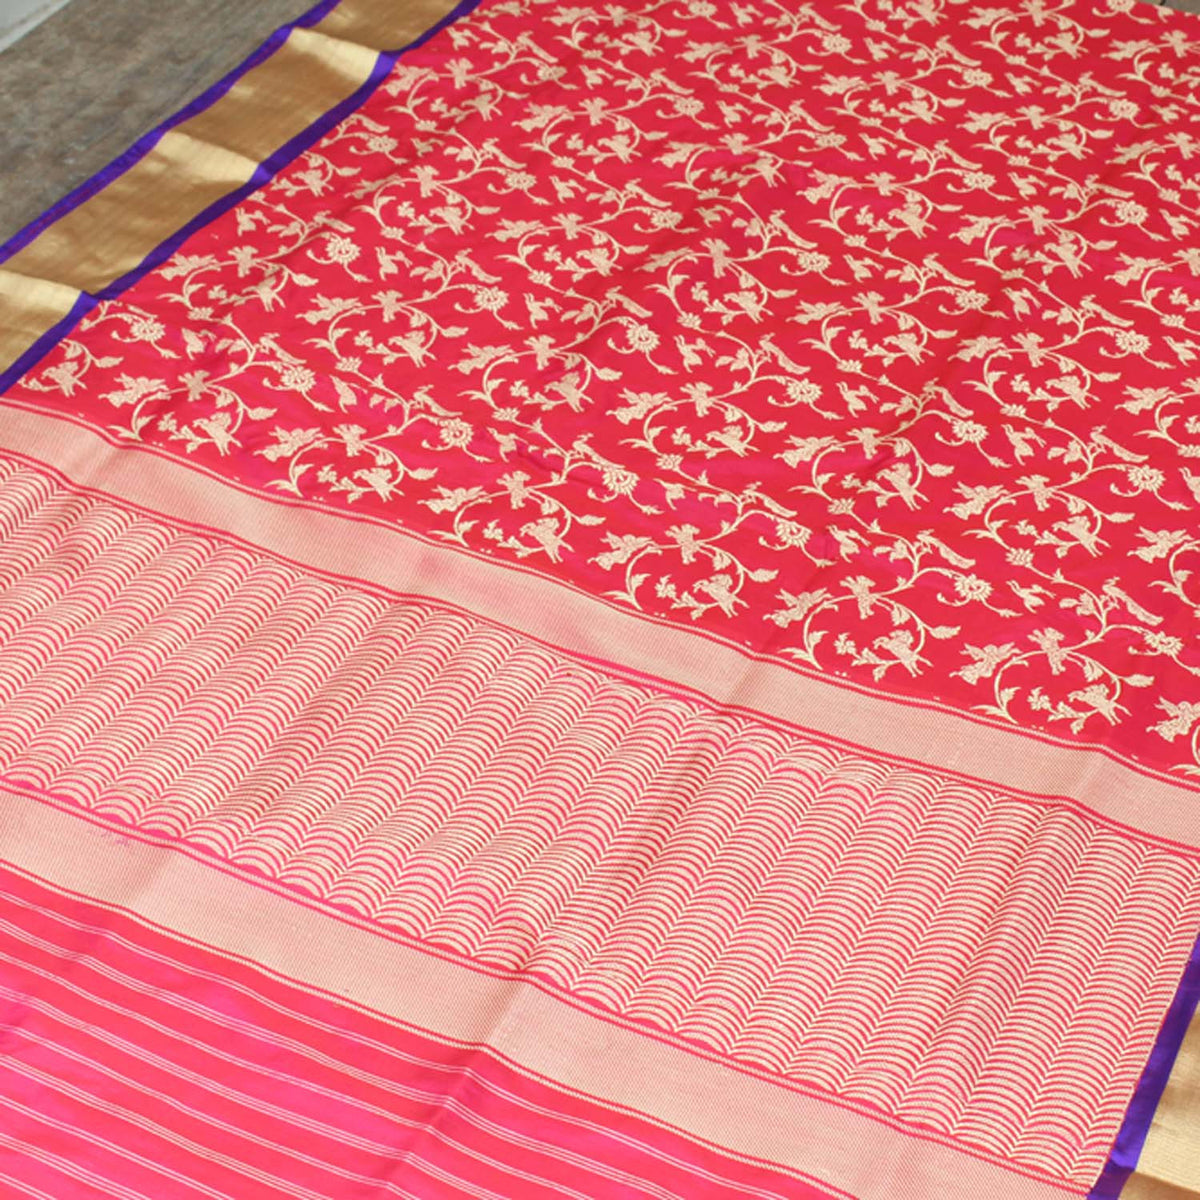 Gulabi Pink-Red Pure Katan Silk Banarasi Handloom Dupatta - Tilfi - 2